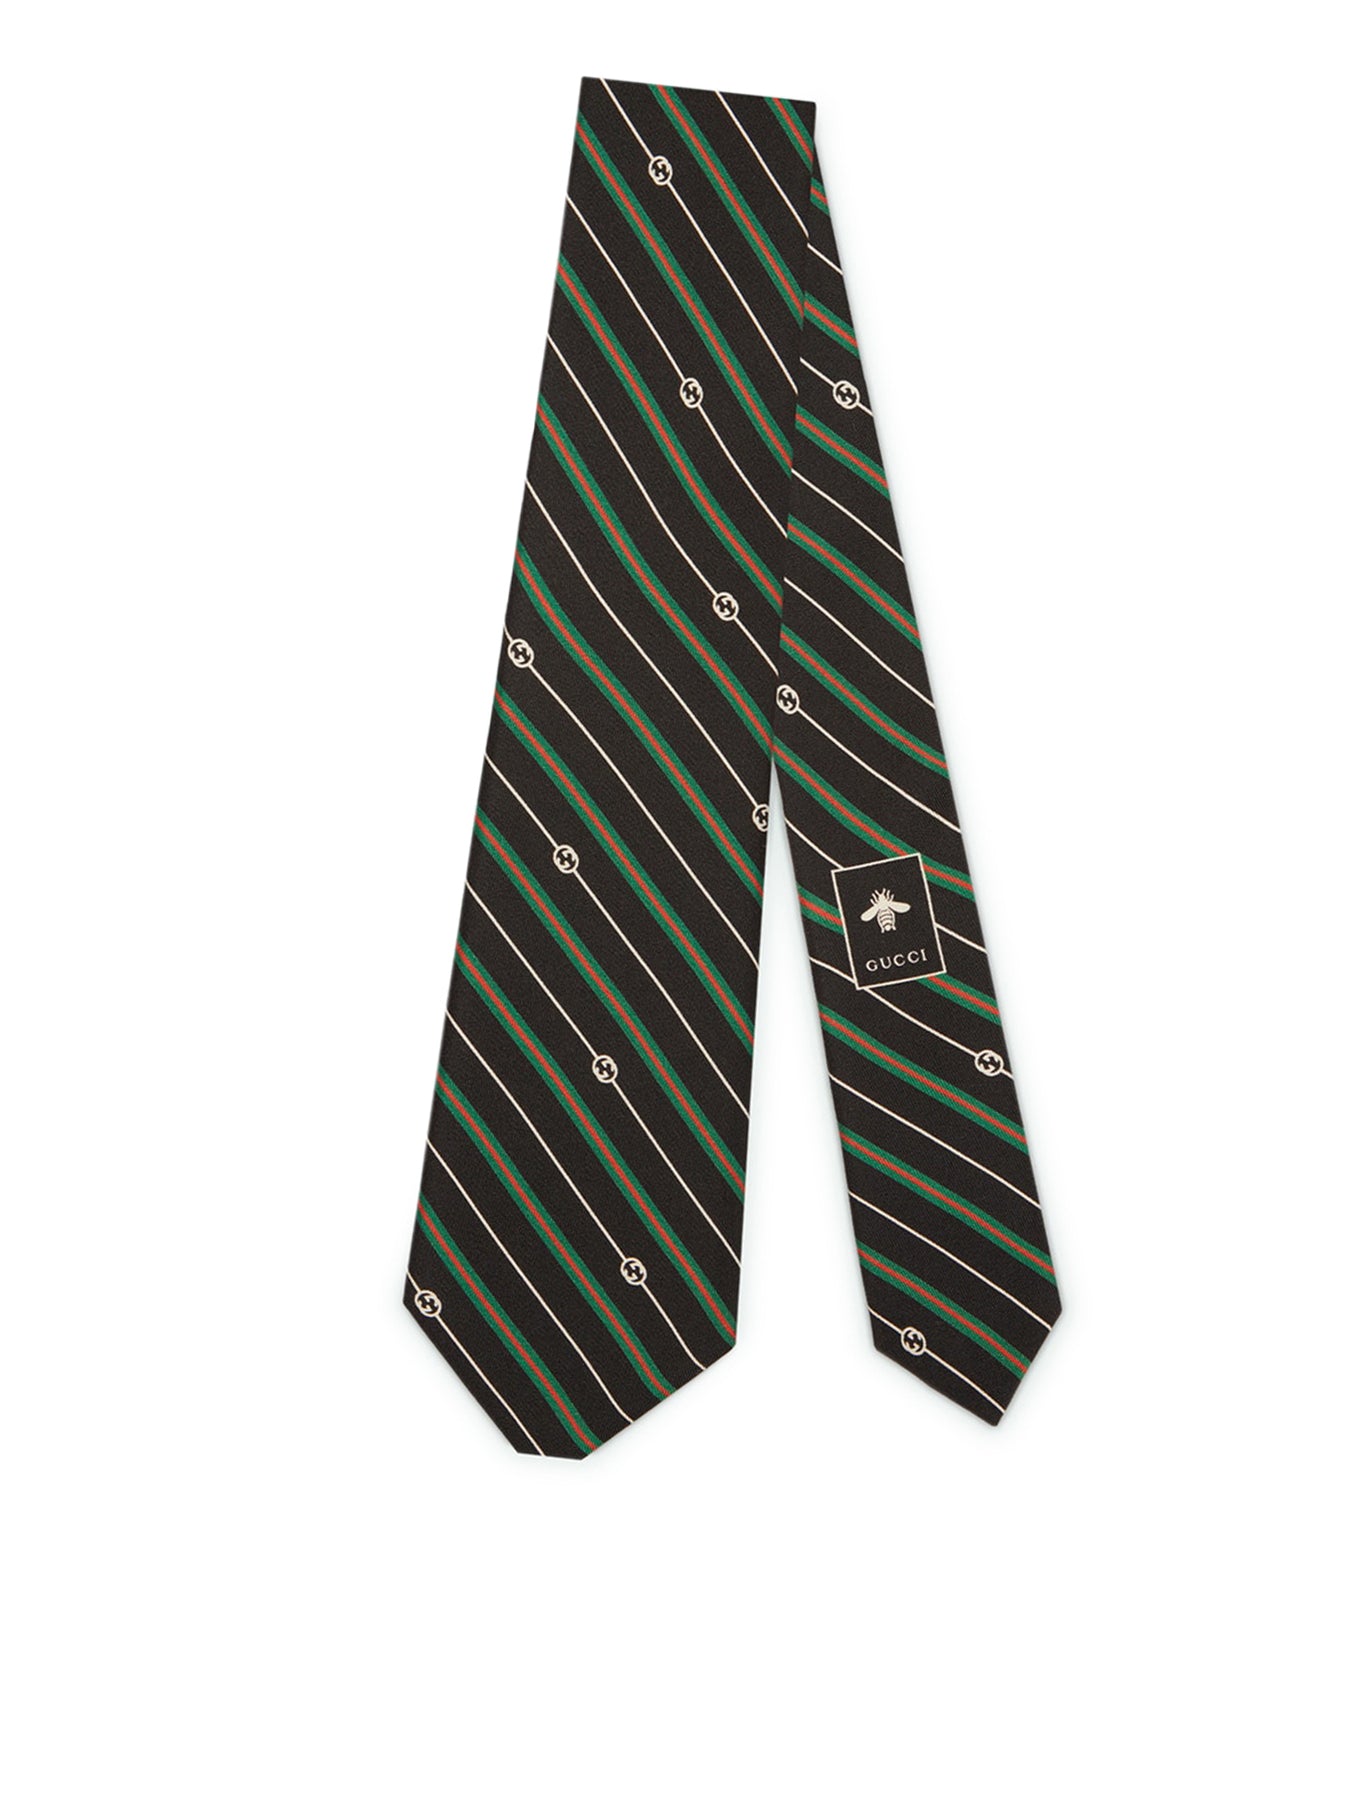 GG cross silk tie